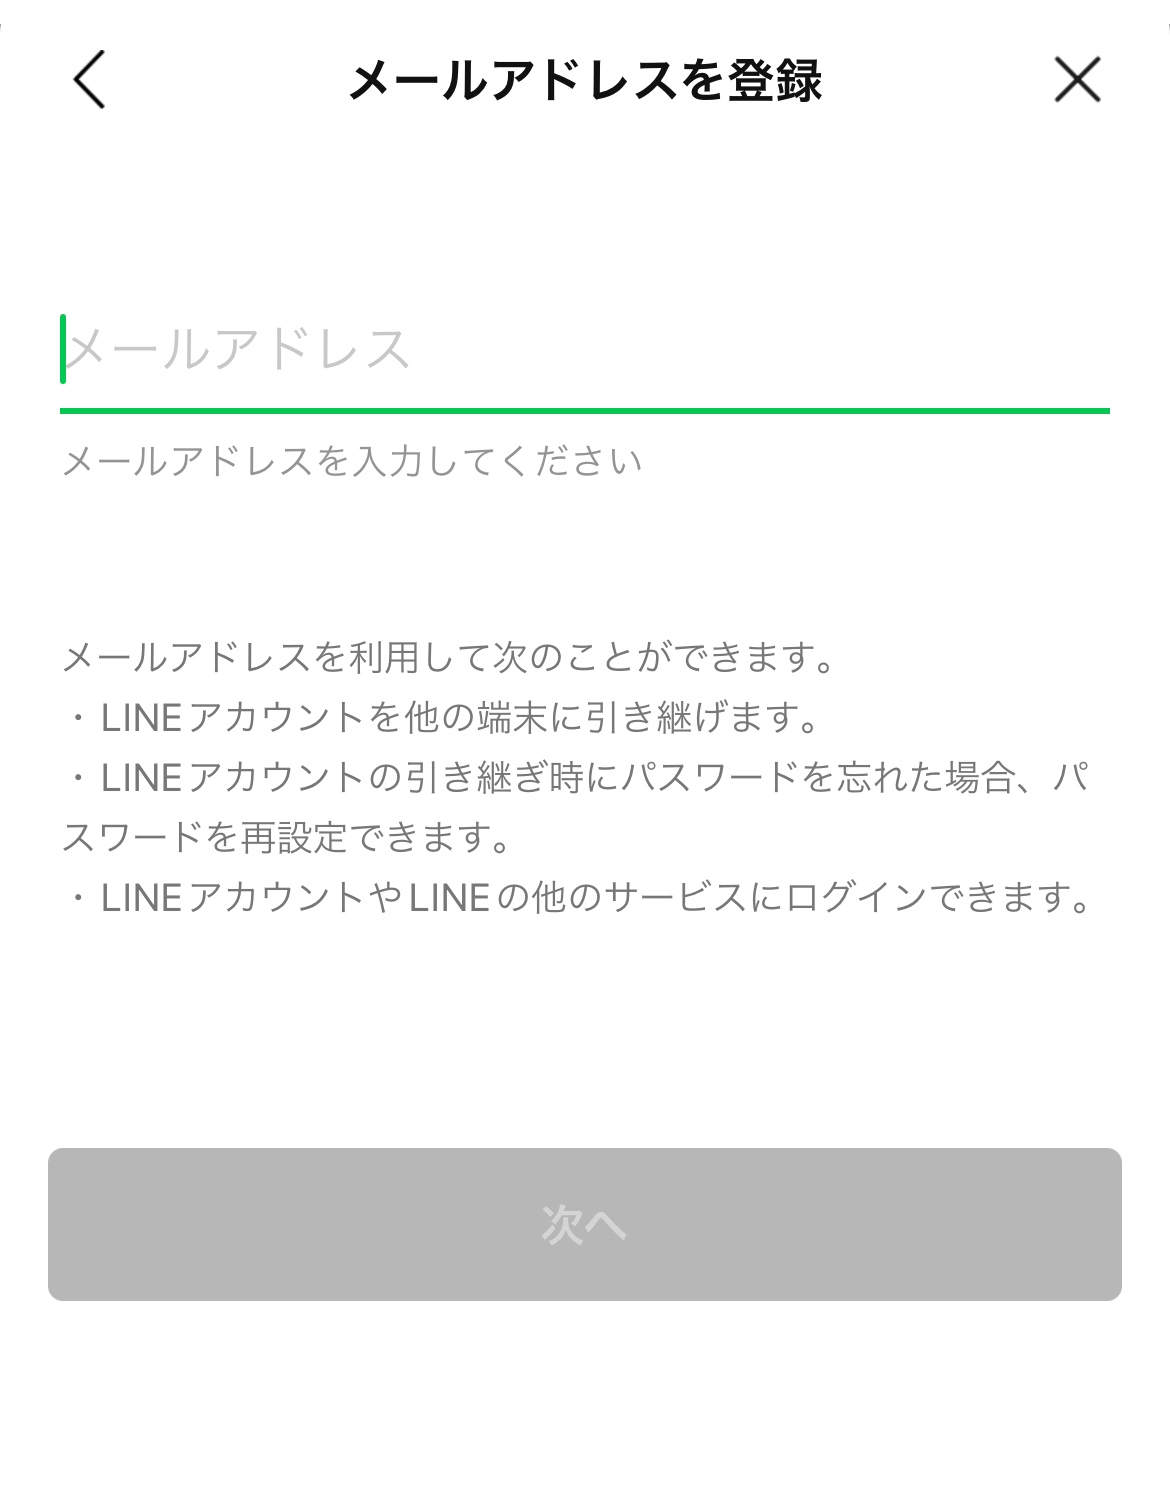 で line メール ログイン アドレス LINE公式アカウント （LINE